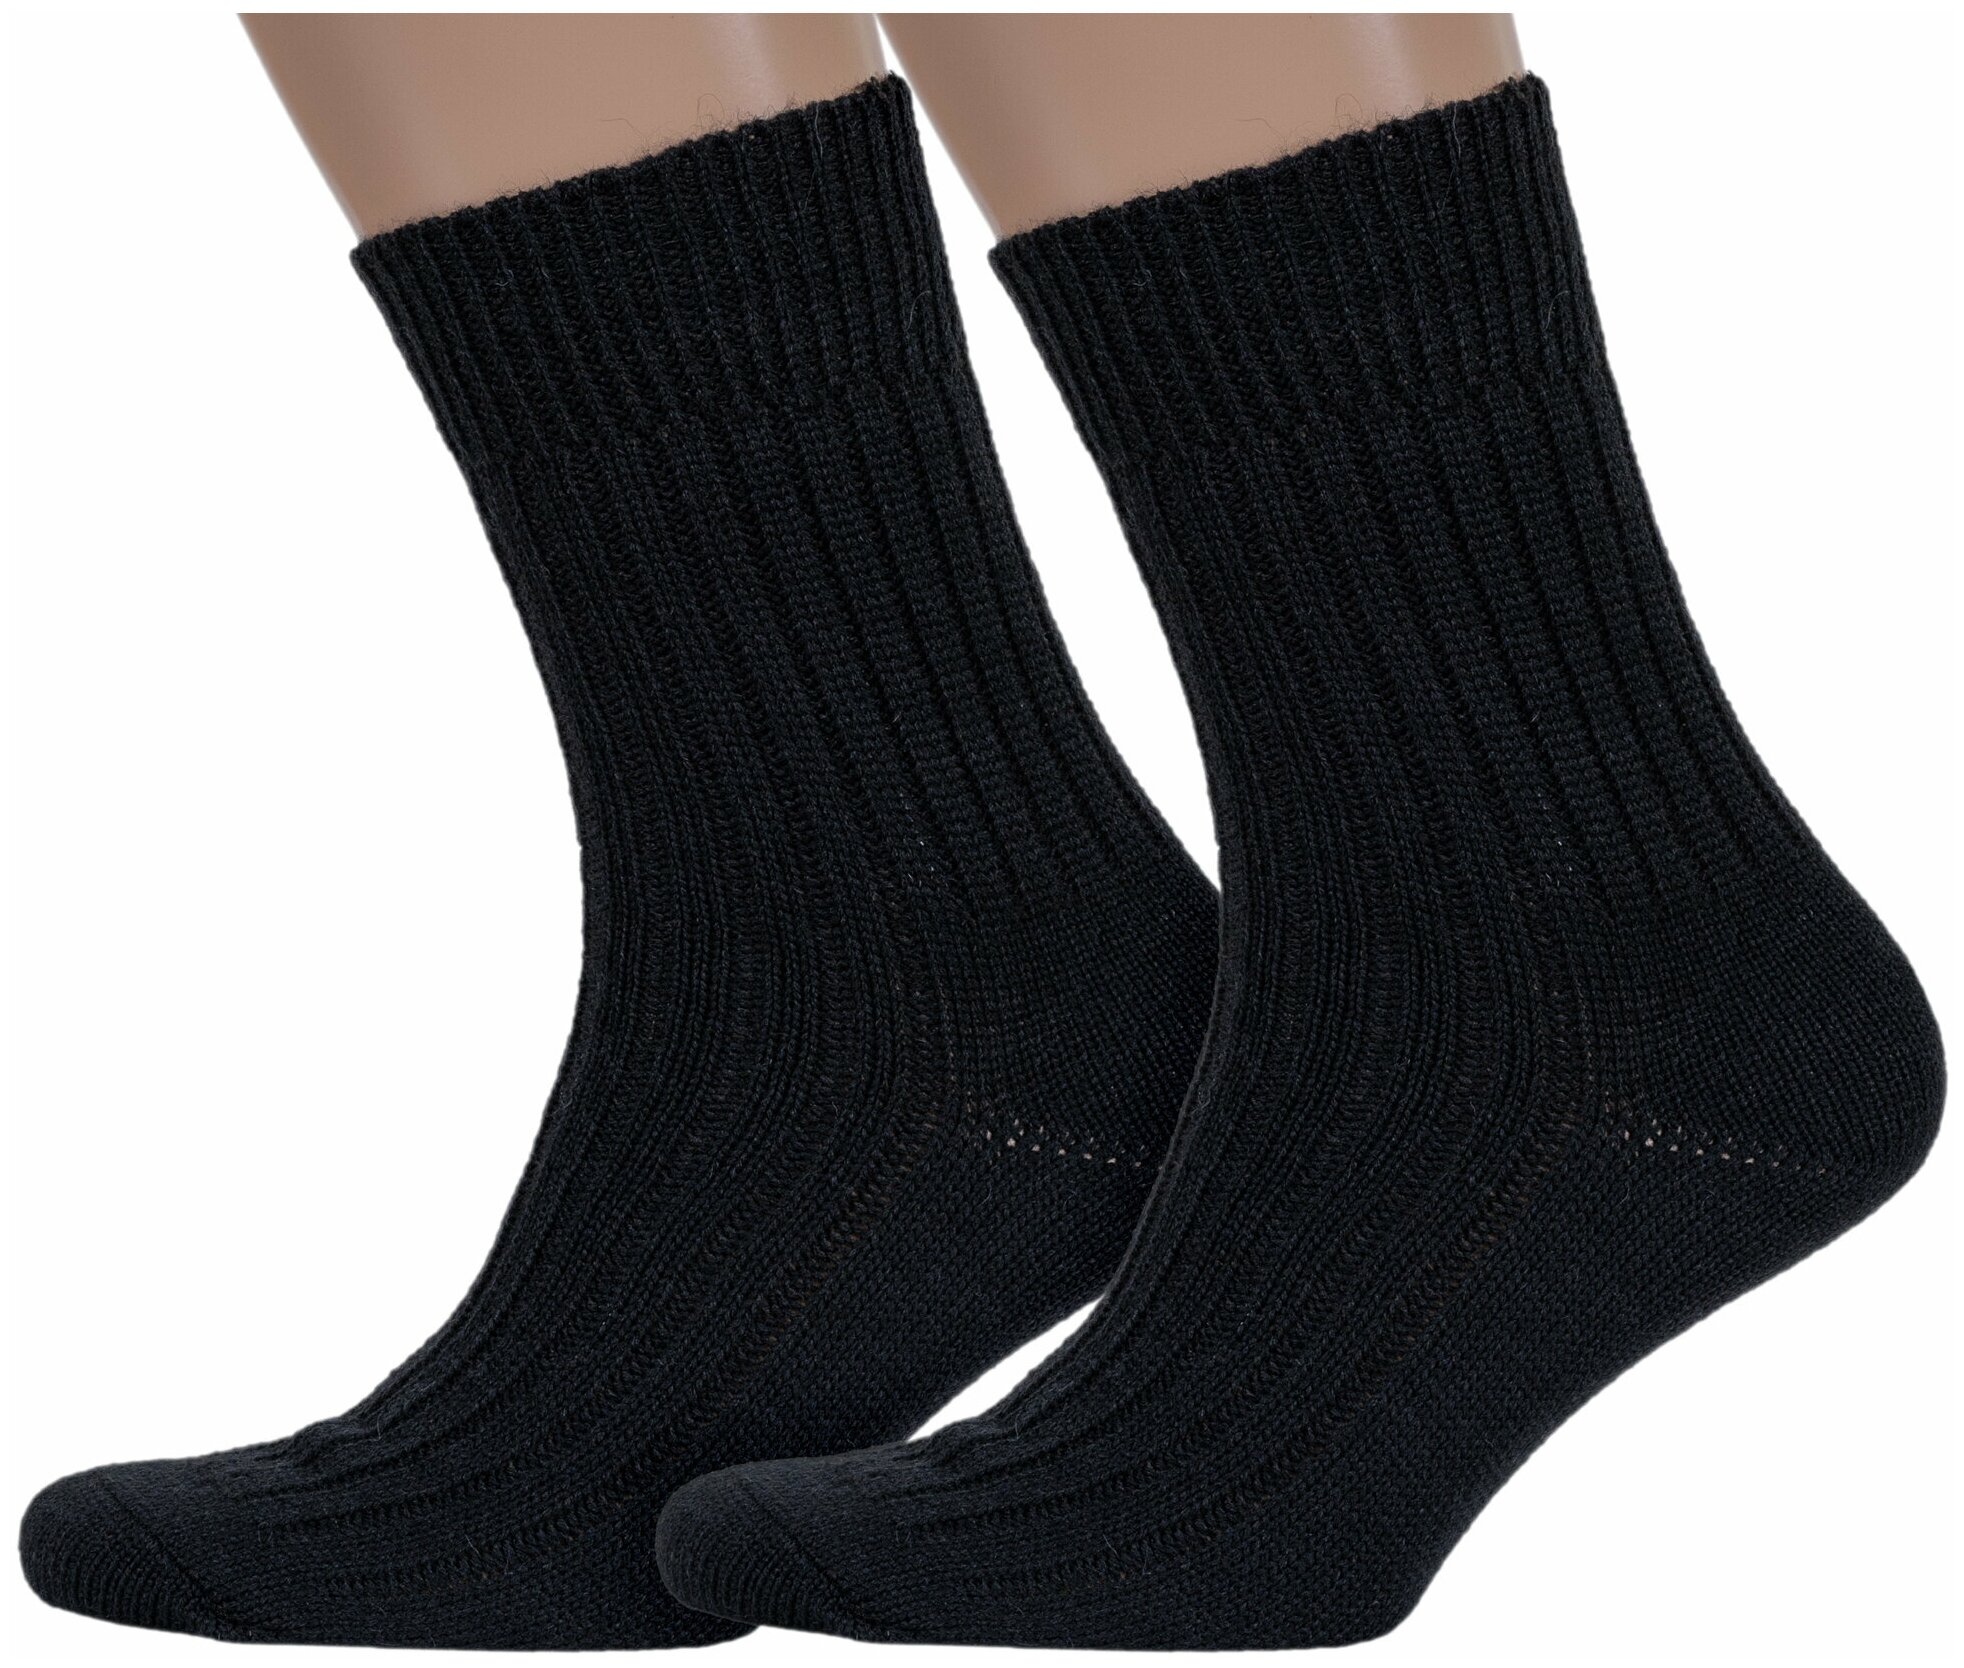 Комплект из 2 пар мужских полушерстяных носков Брестские (БЧК) рис. 012 черные